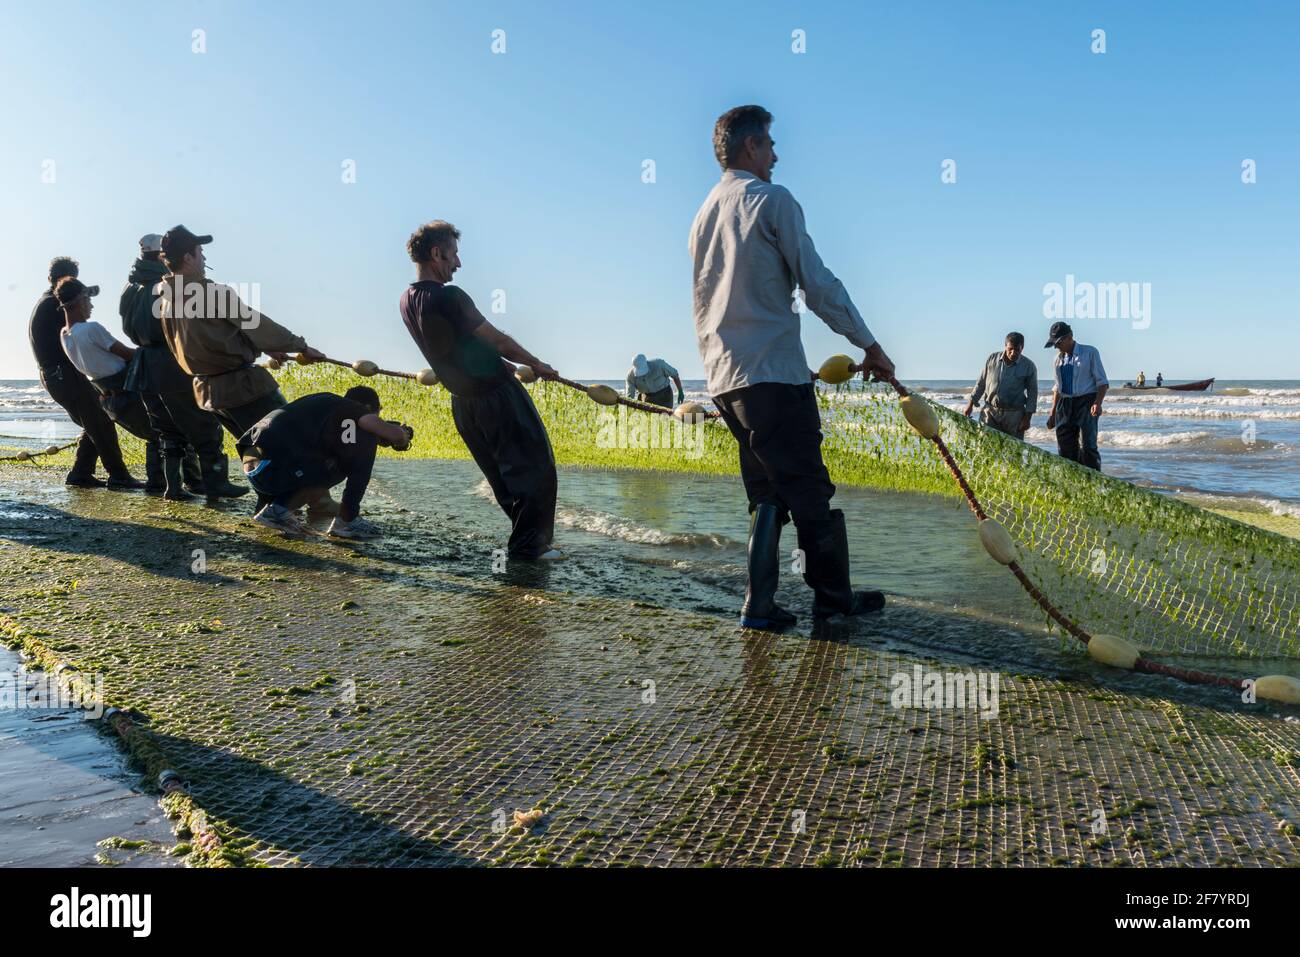 Les pêcheurs se transportent dans les prises de Babolsar sur la mer Caspienne. Iran Banque D'Images